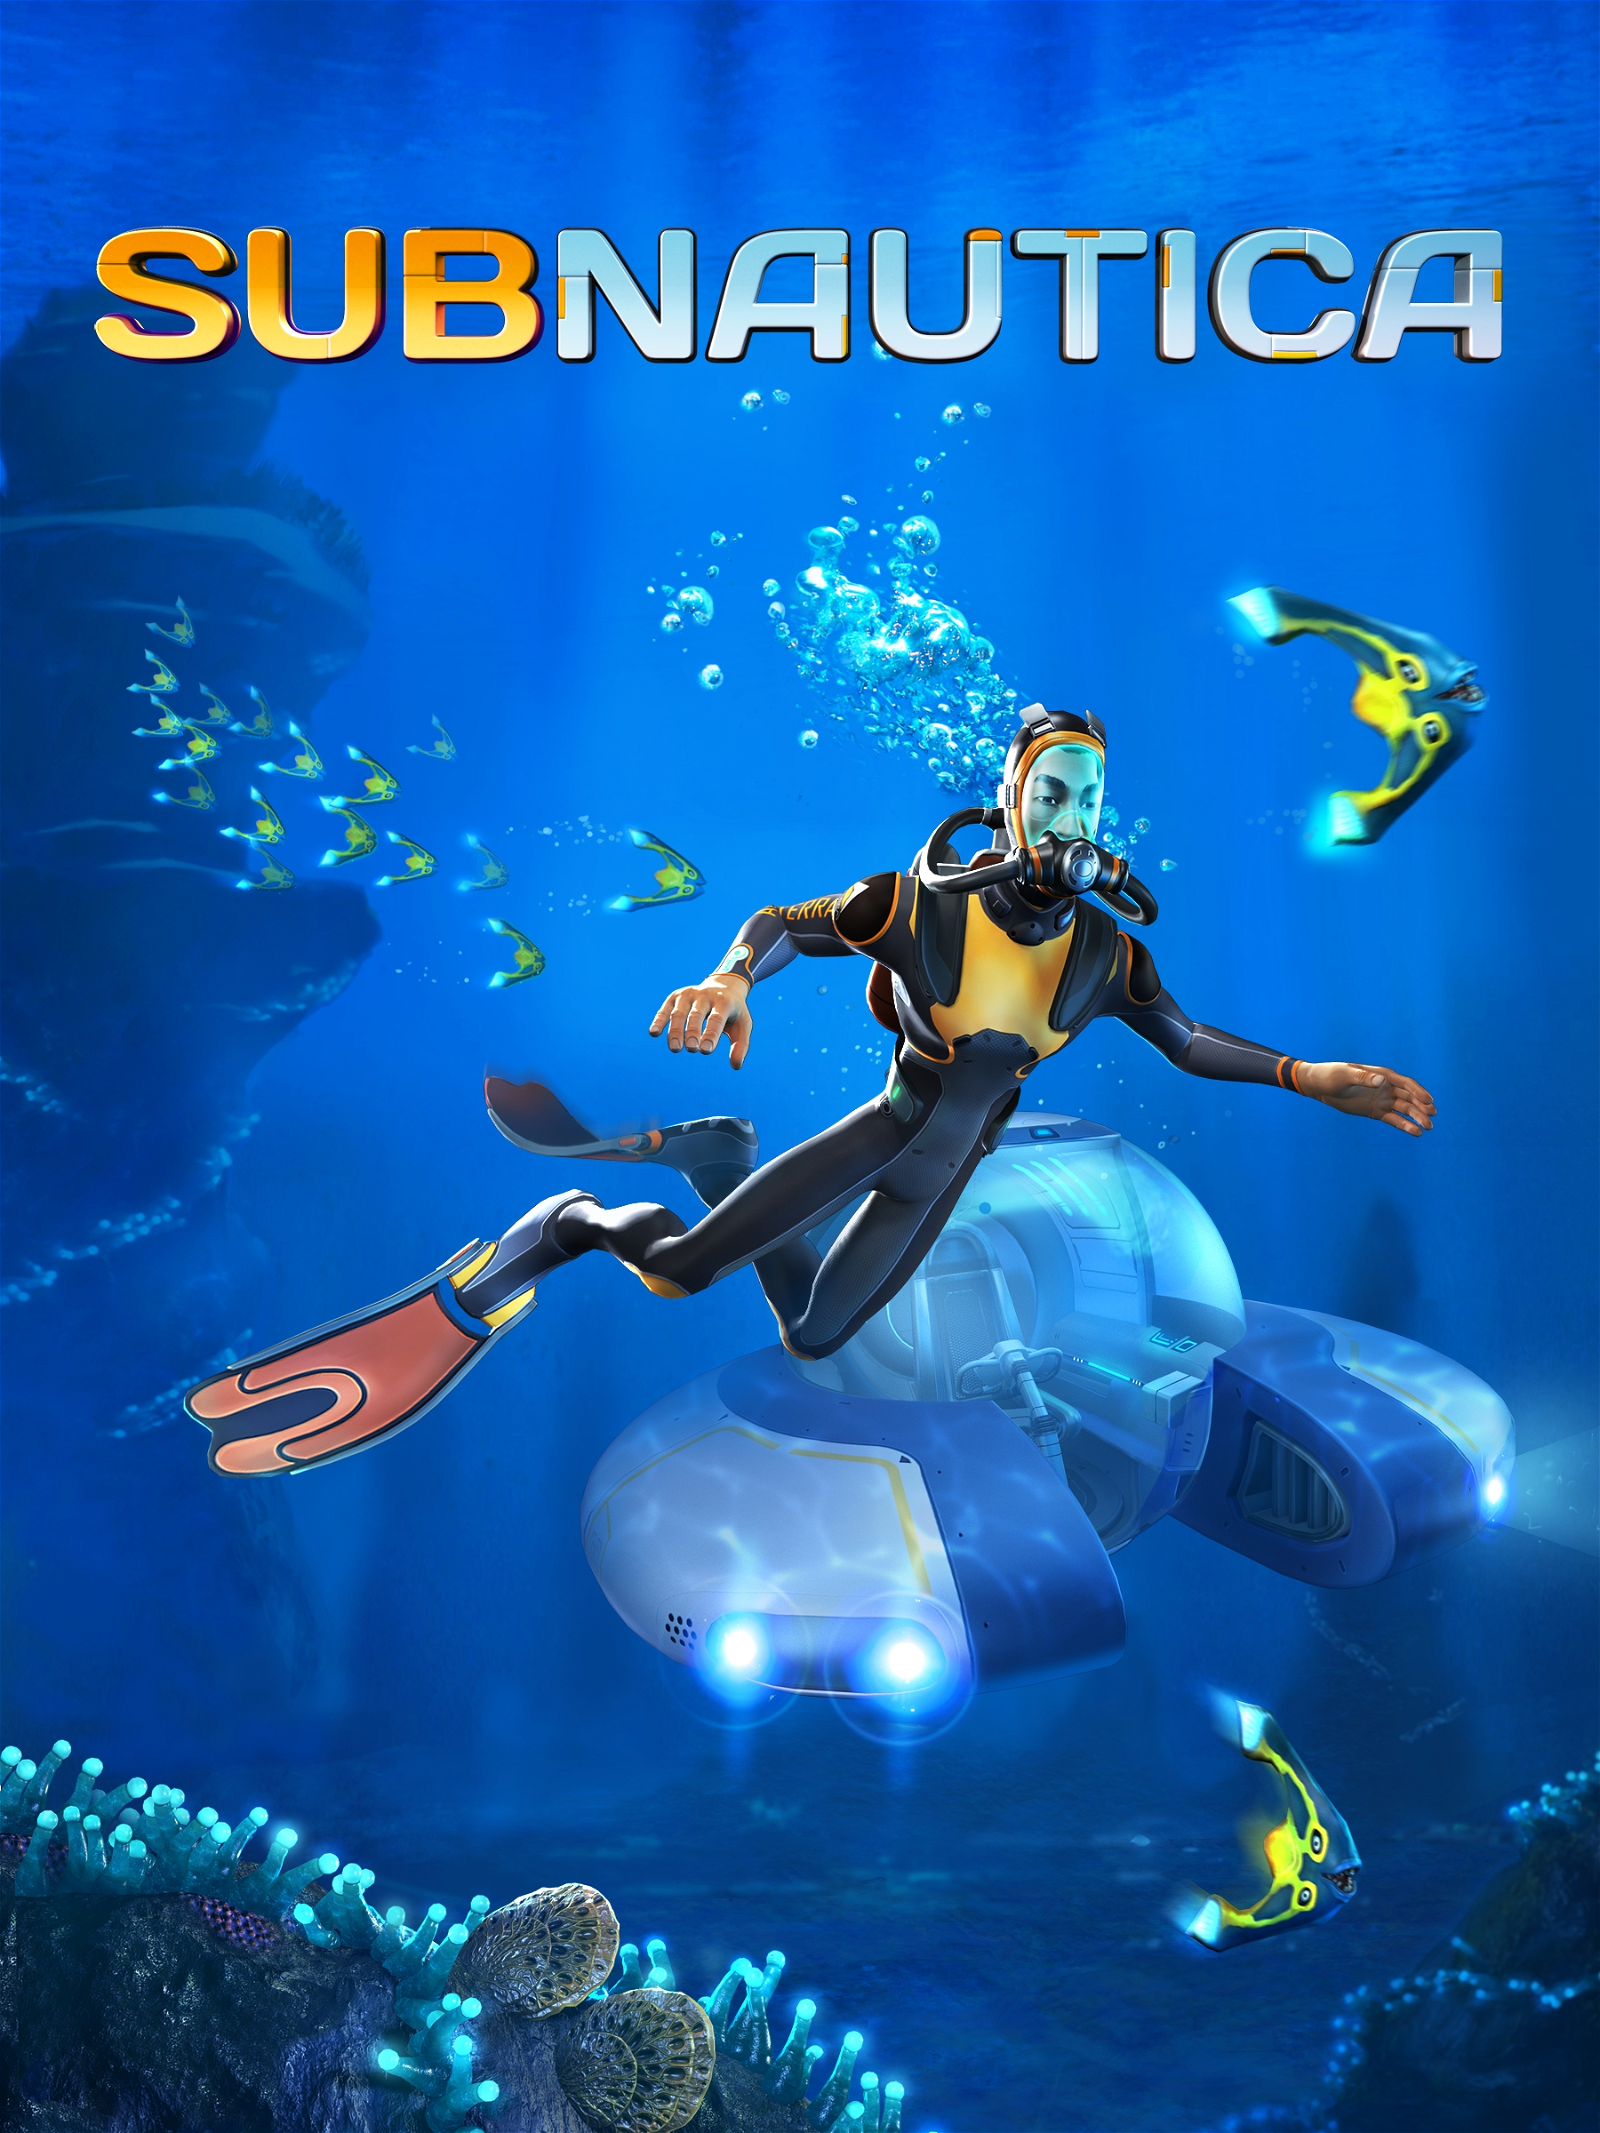 Image of Subnautica